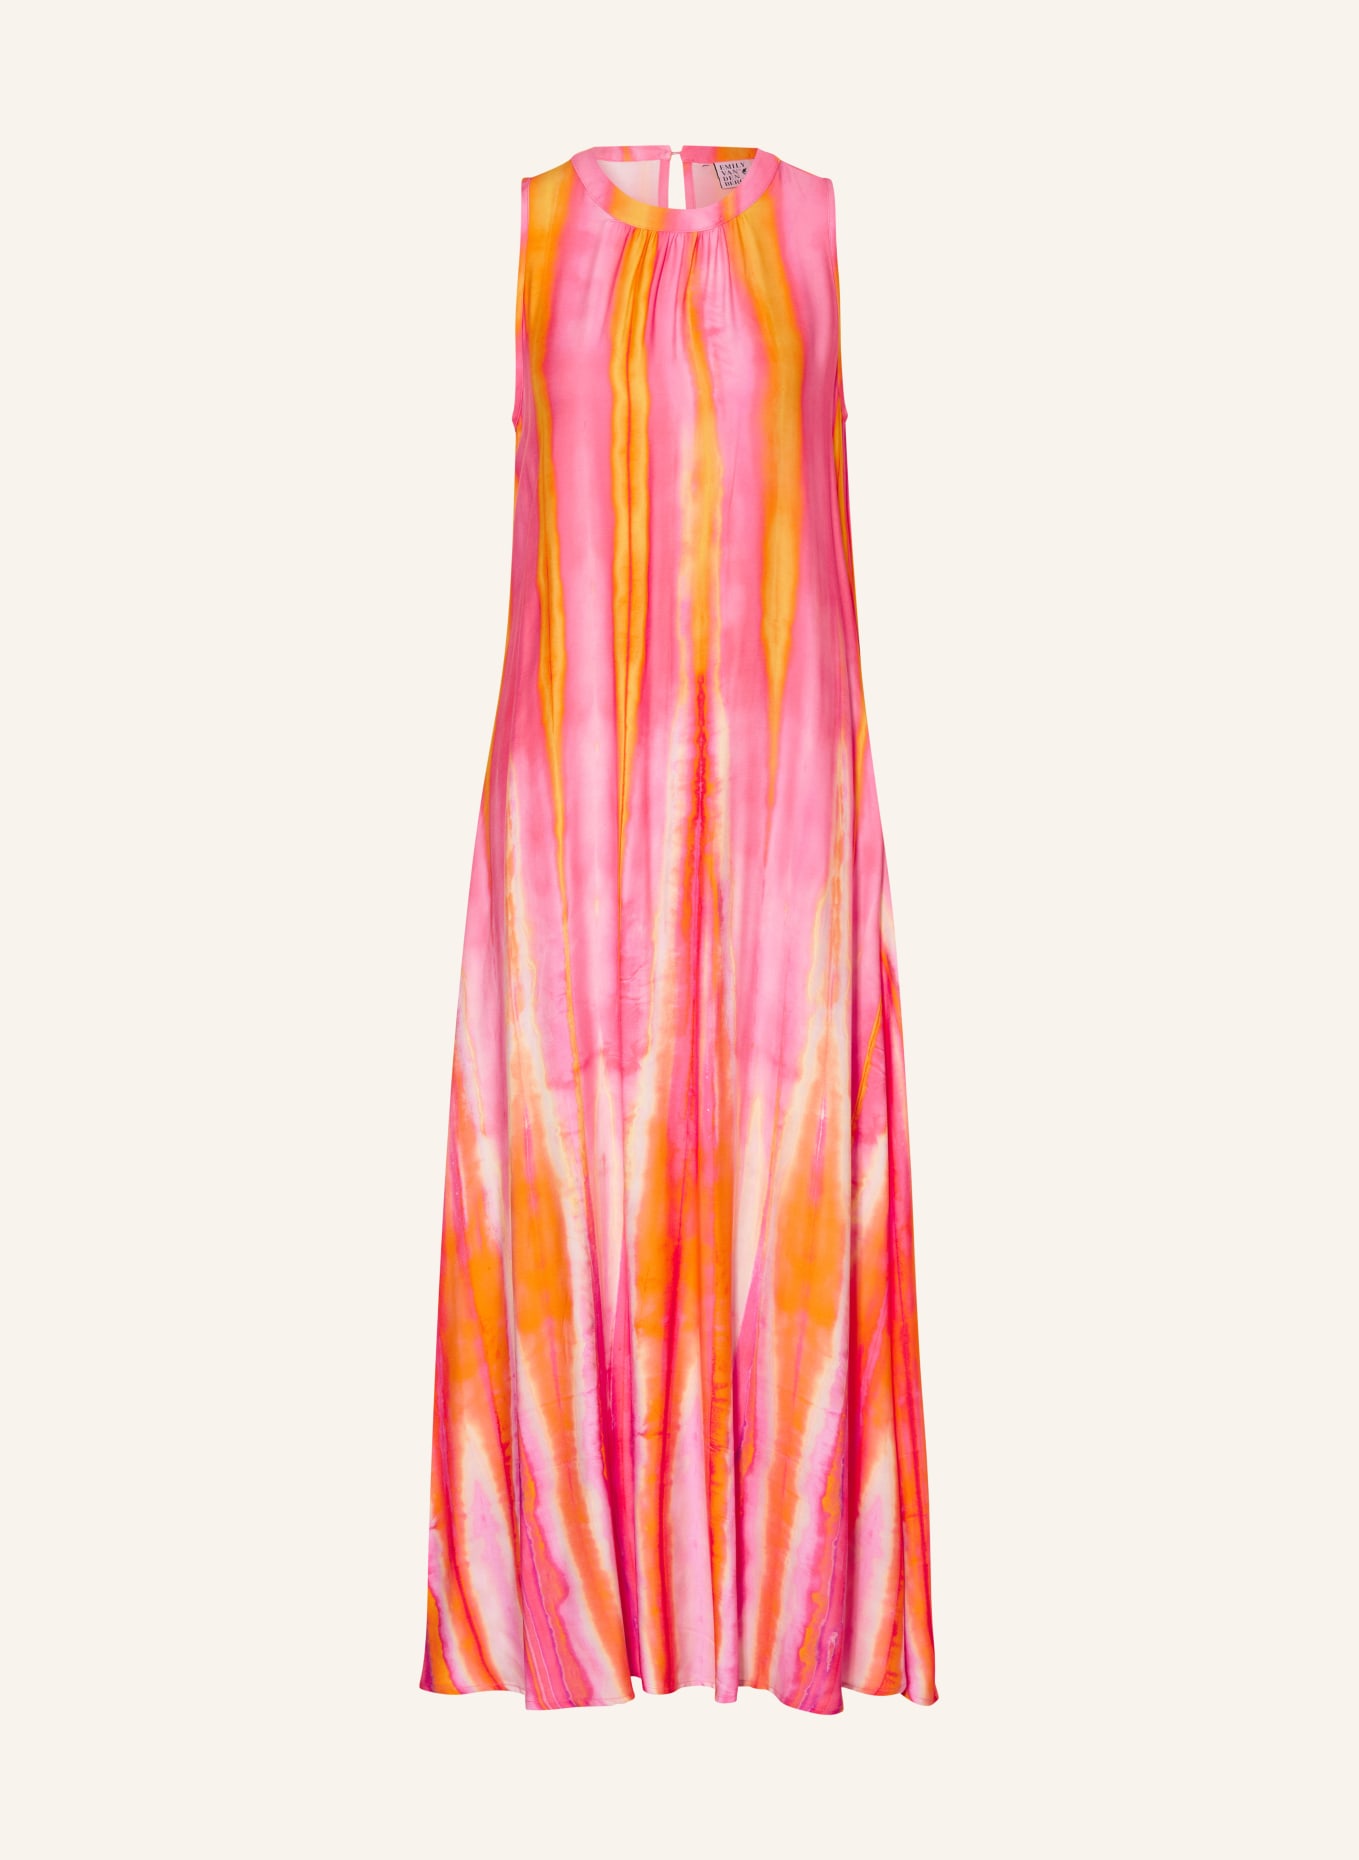 Emily VAN DEN BERGH Dress, Color: PINK/ ORANGE (Image 1)